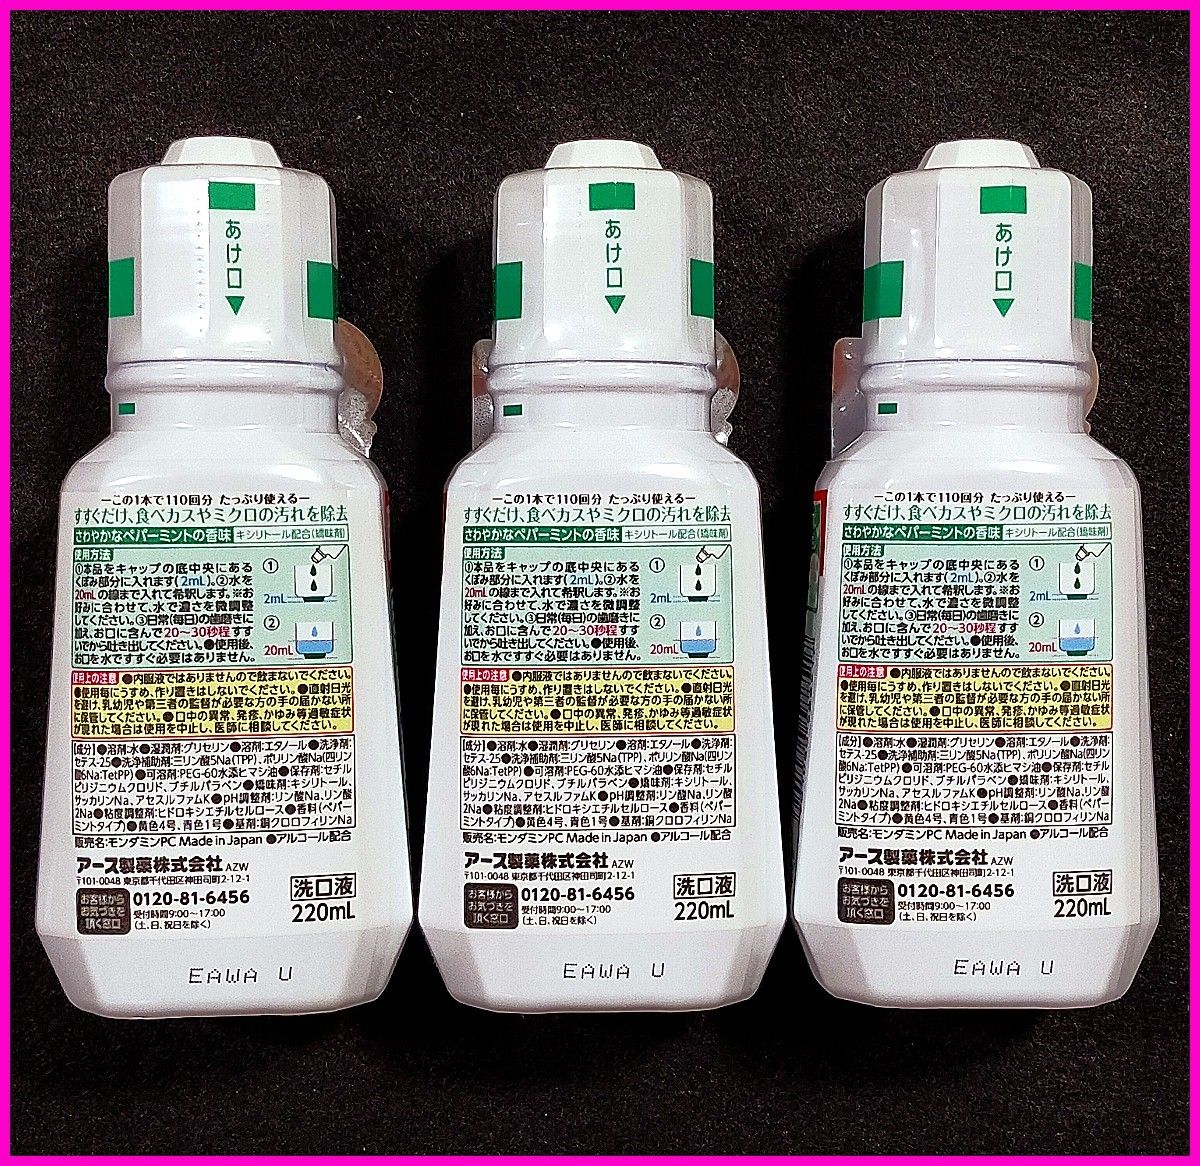 モンダミン ペパーミント マウスウォッシュ 洗口液 濃縮タイプ ボトル 小さい 220mL×3個セット アース製薬 株主優待品